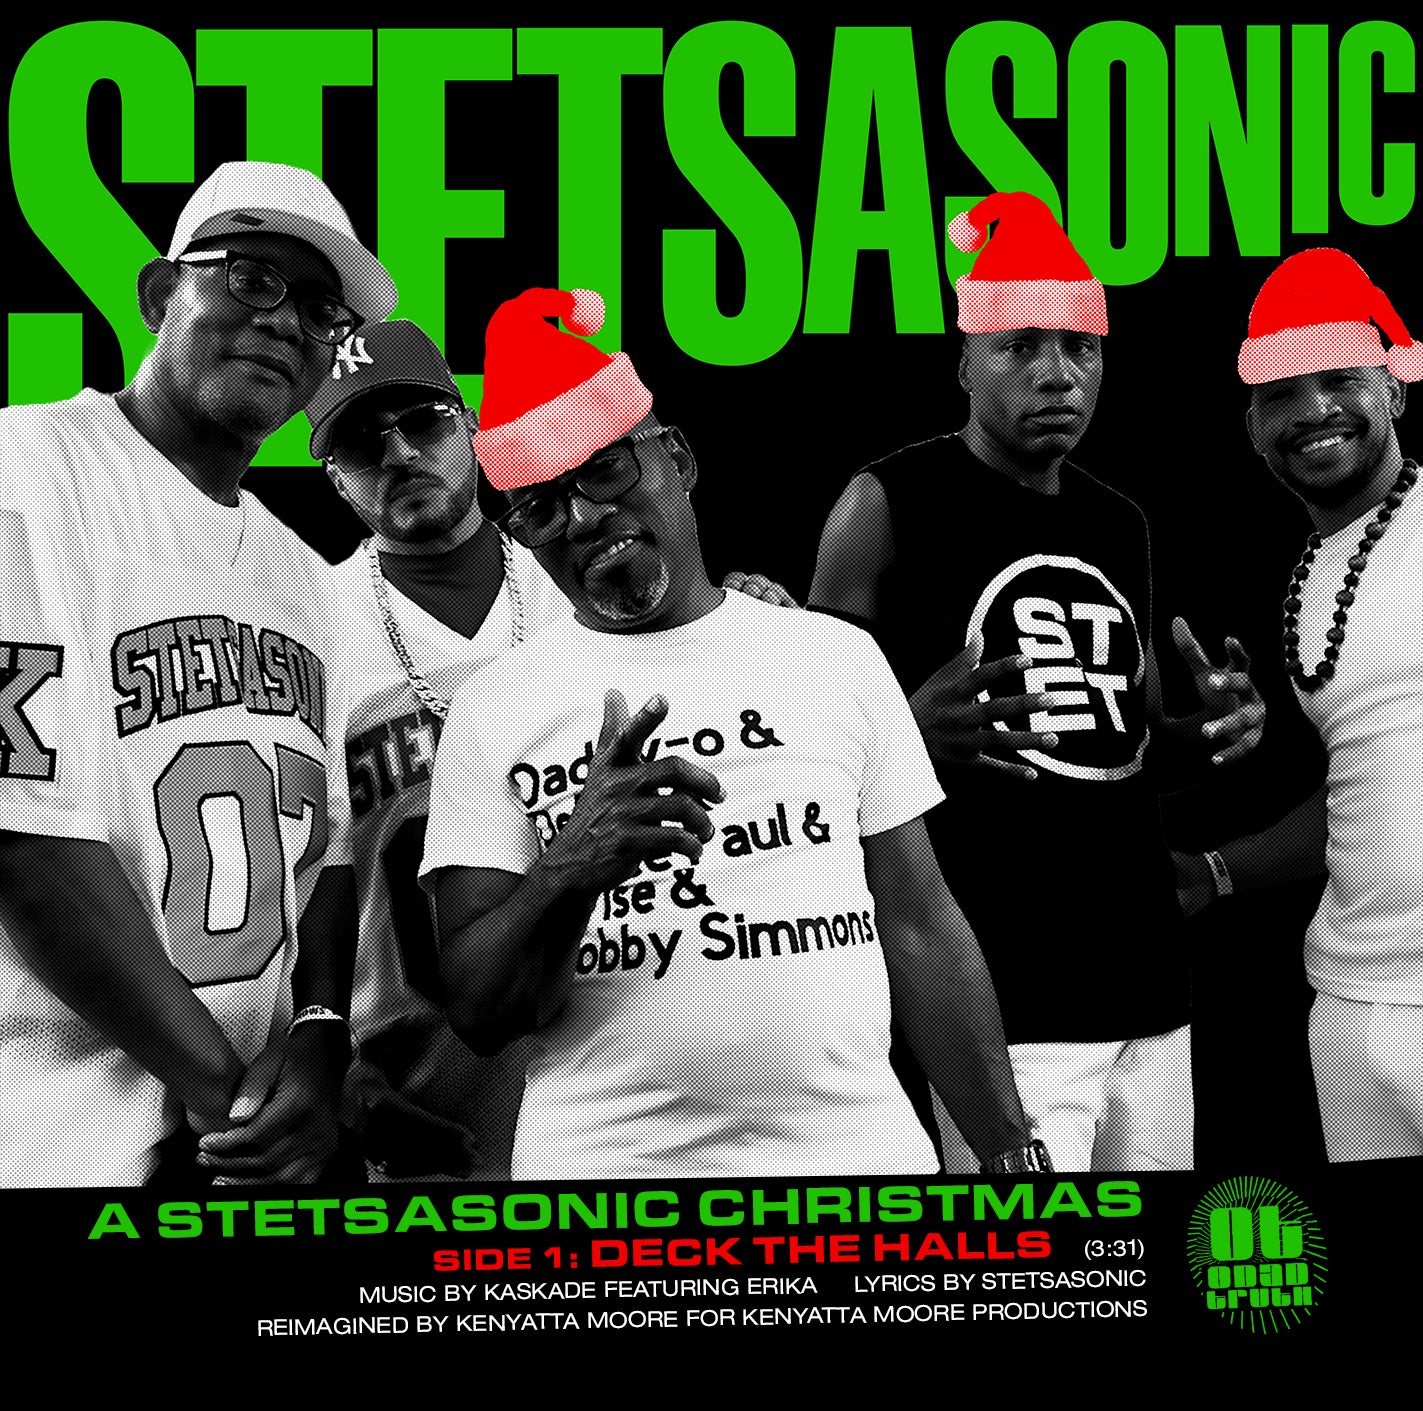 Stetsasonic - A Stetsasonic Christmas (CD-R Single)